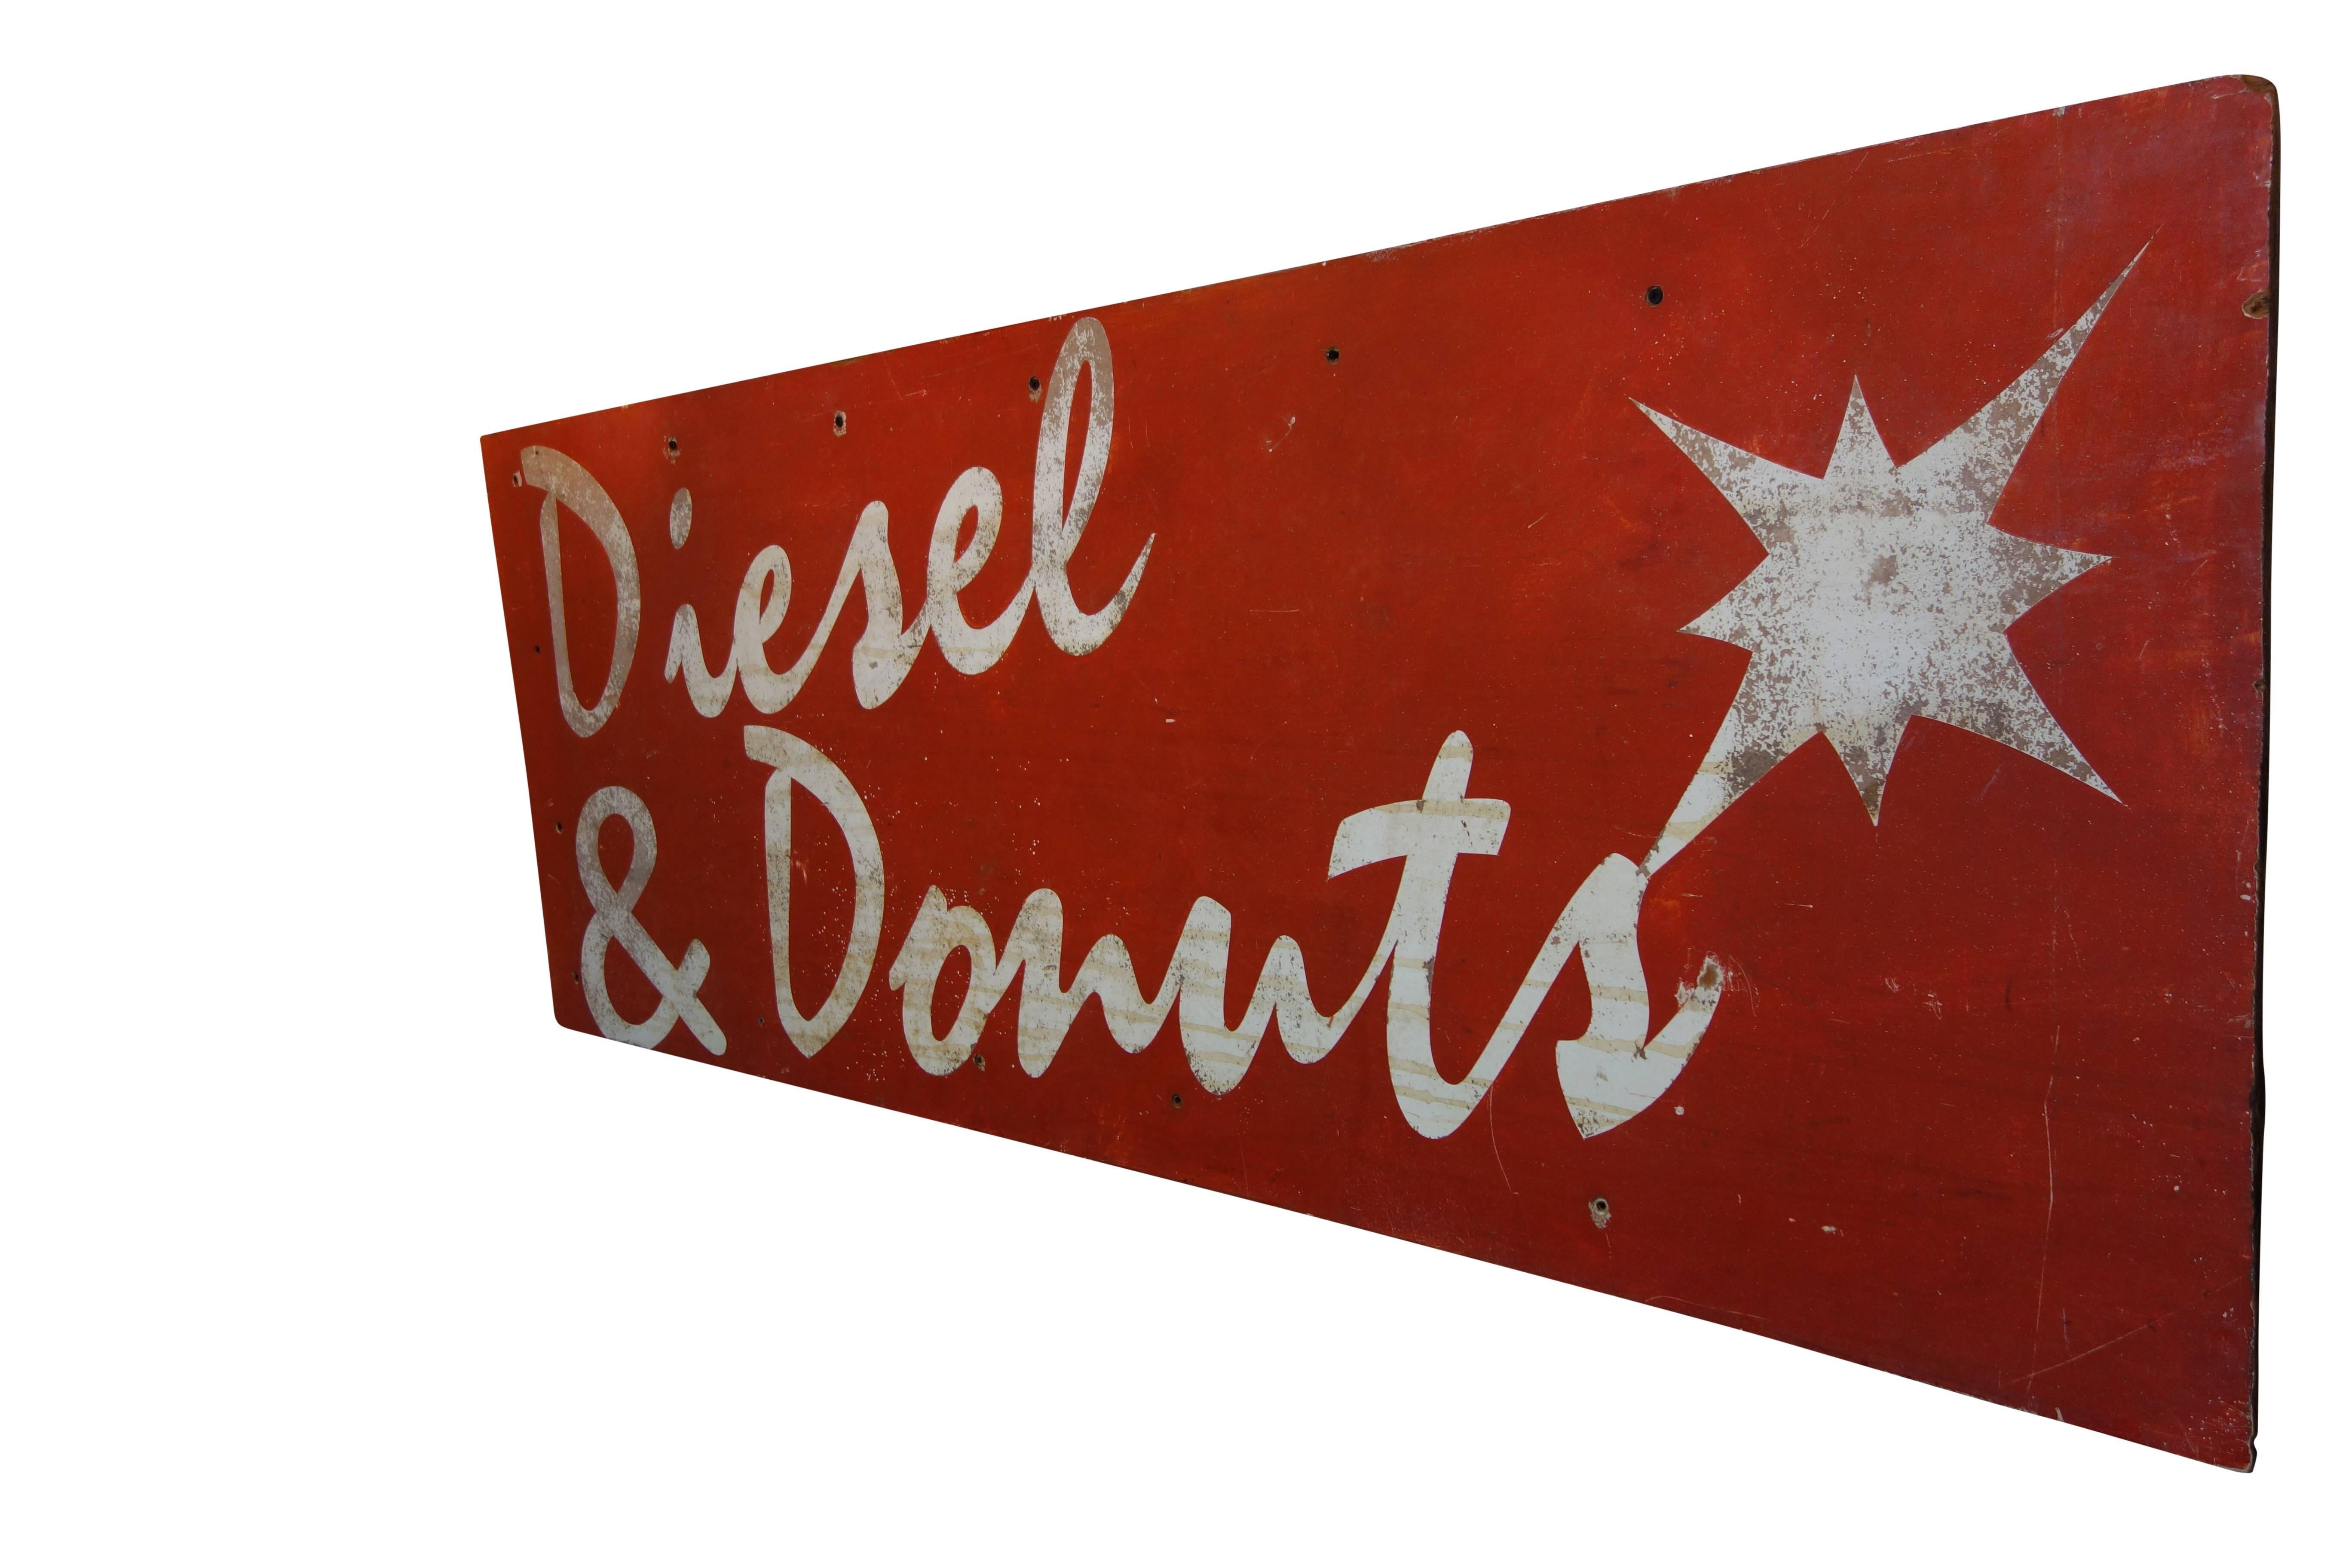 Folk Art “Diesel & Donuts” Painted Wood Advertising Sign